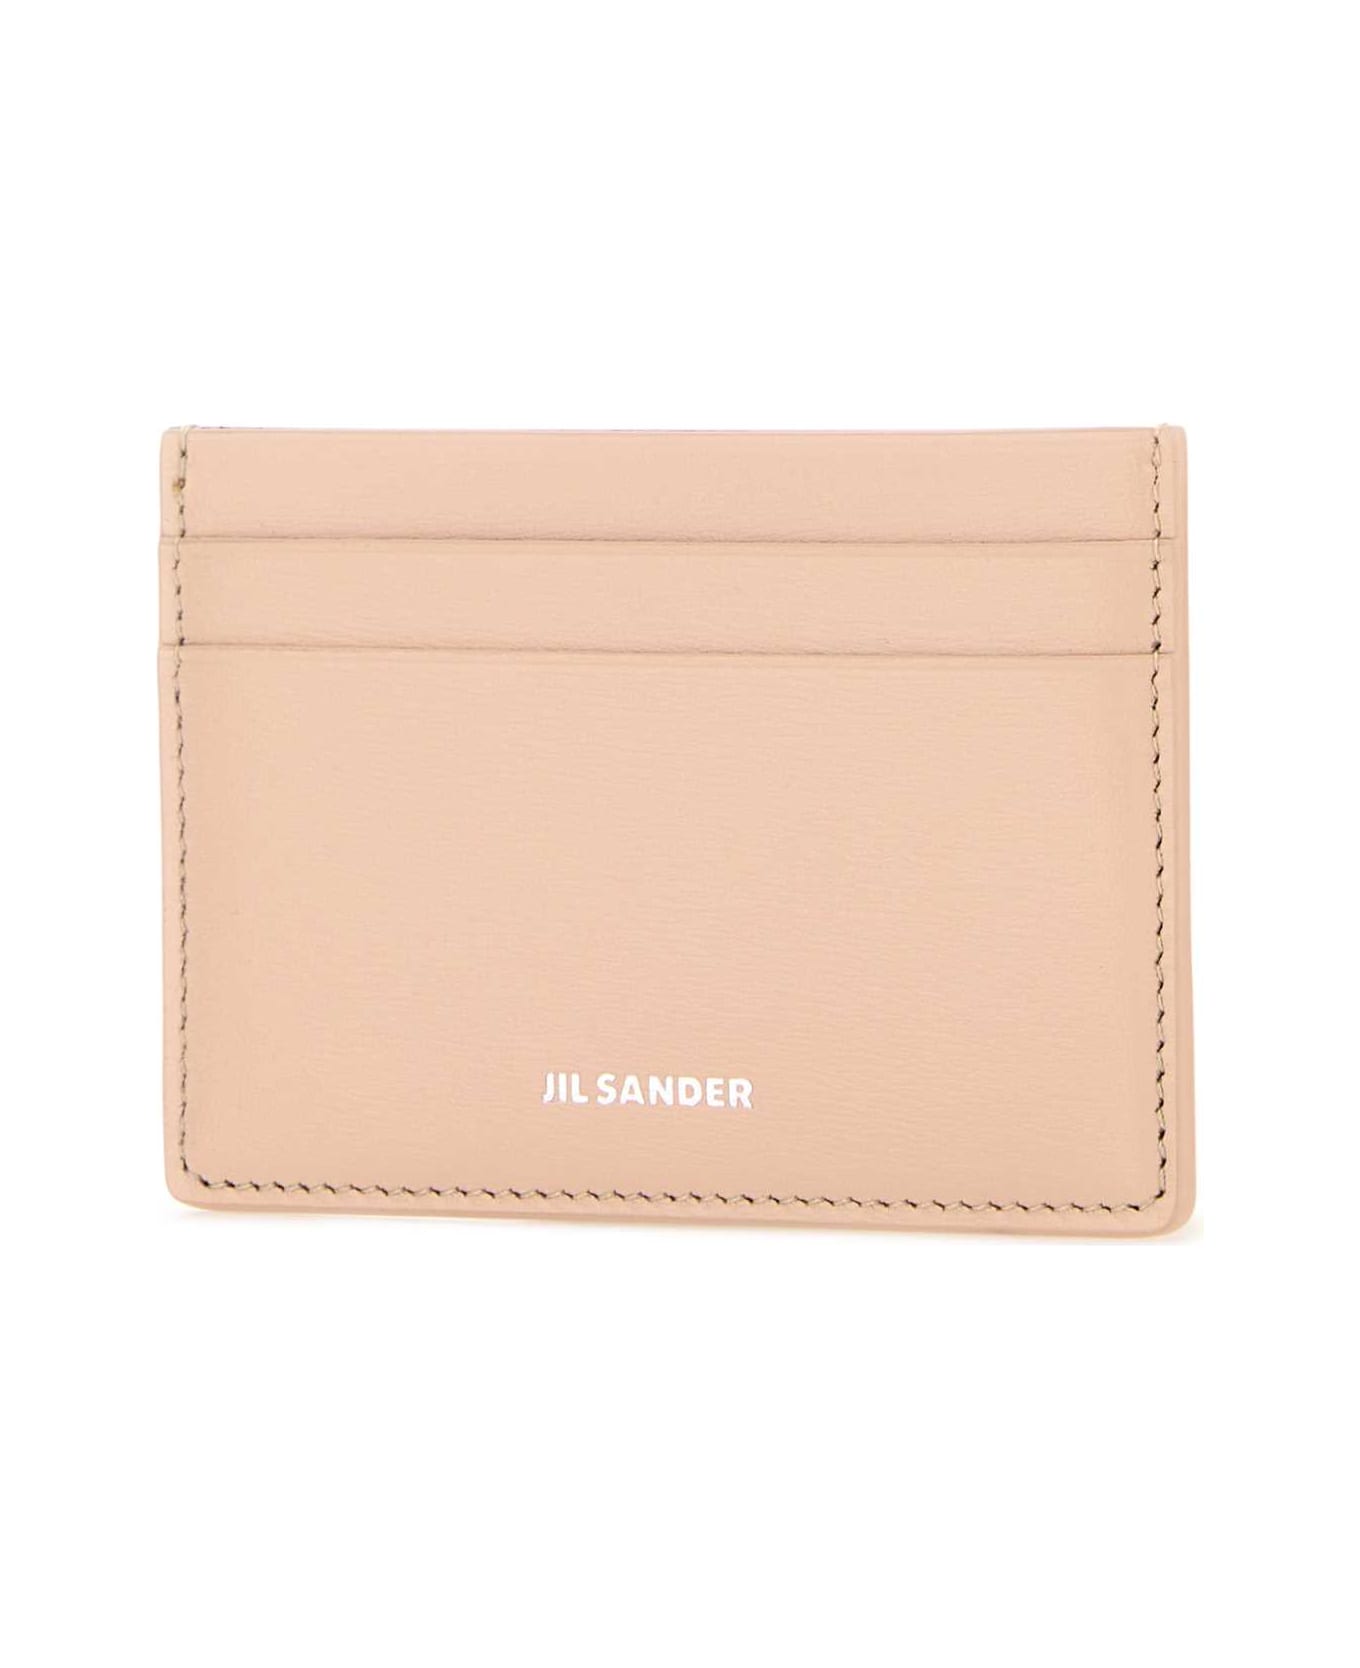 Jil Sander Pastel Pink Leather Card Holder - 679 財布